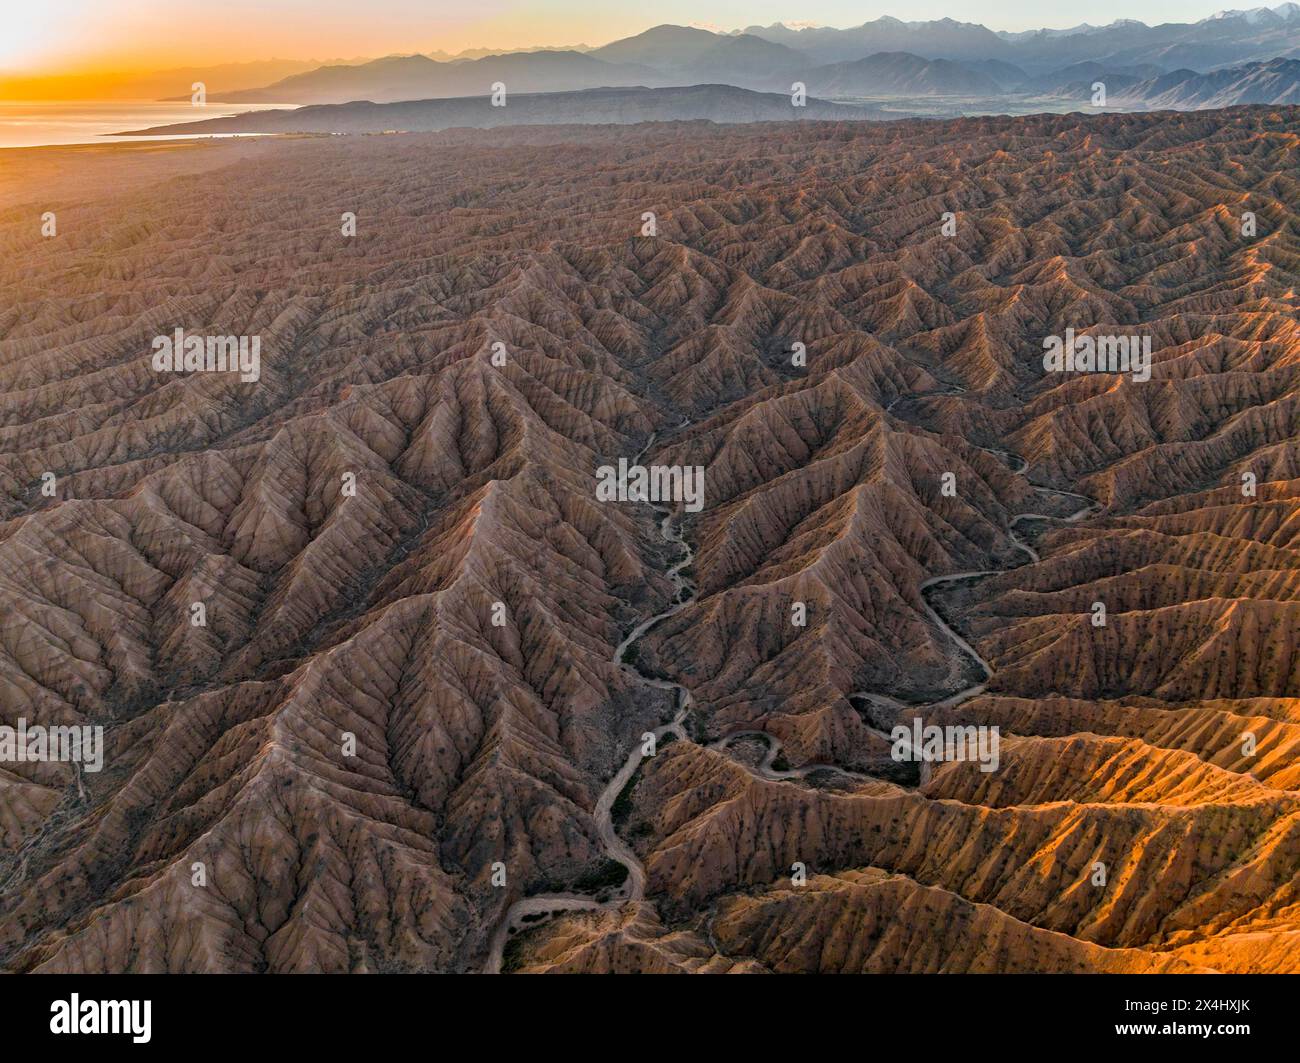 Abendliche Atmosphäre, Berggipfel der Tien Shan Mountains, dramatische karge Landschaft mit erodierten Hügeln, Badlands, Canyon der vergessenen Flüsse Stockfoto